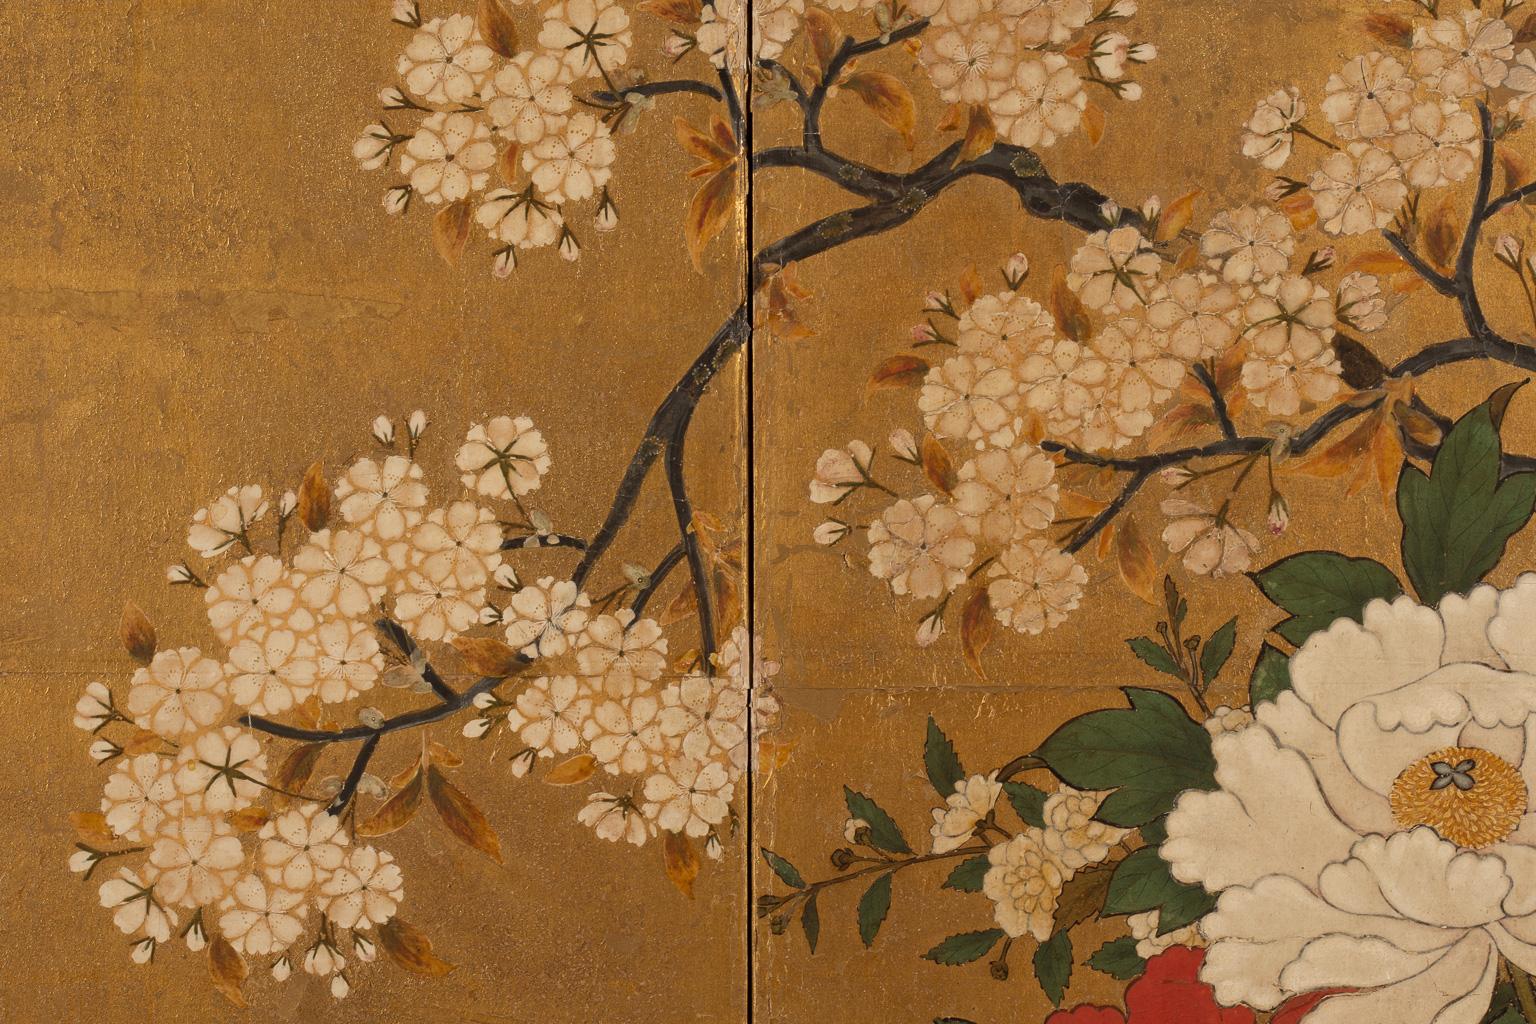 Monogramm mit Blumenarrangements und seltenen Vögeln
Zeit der Edo-Periode, 18. Jahrhundert
Paar zweiteilige klappbare Paravents Tinte, Farben, Gofun und Blattgold auf Papier

Jeweils 170 x 165 cm

 

Der Begriff karamono wird verwendet, um